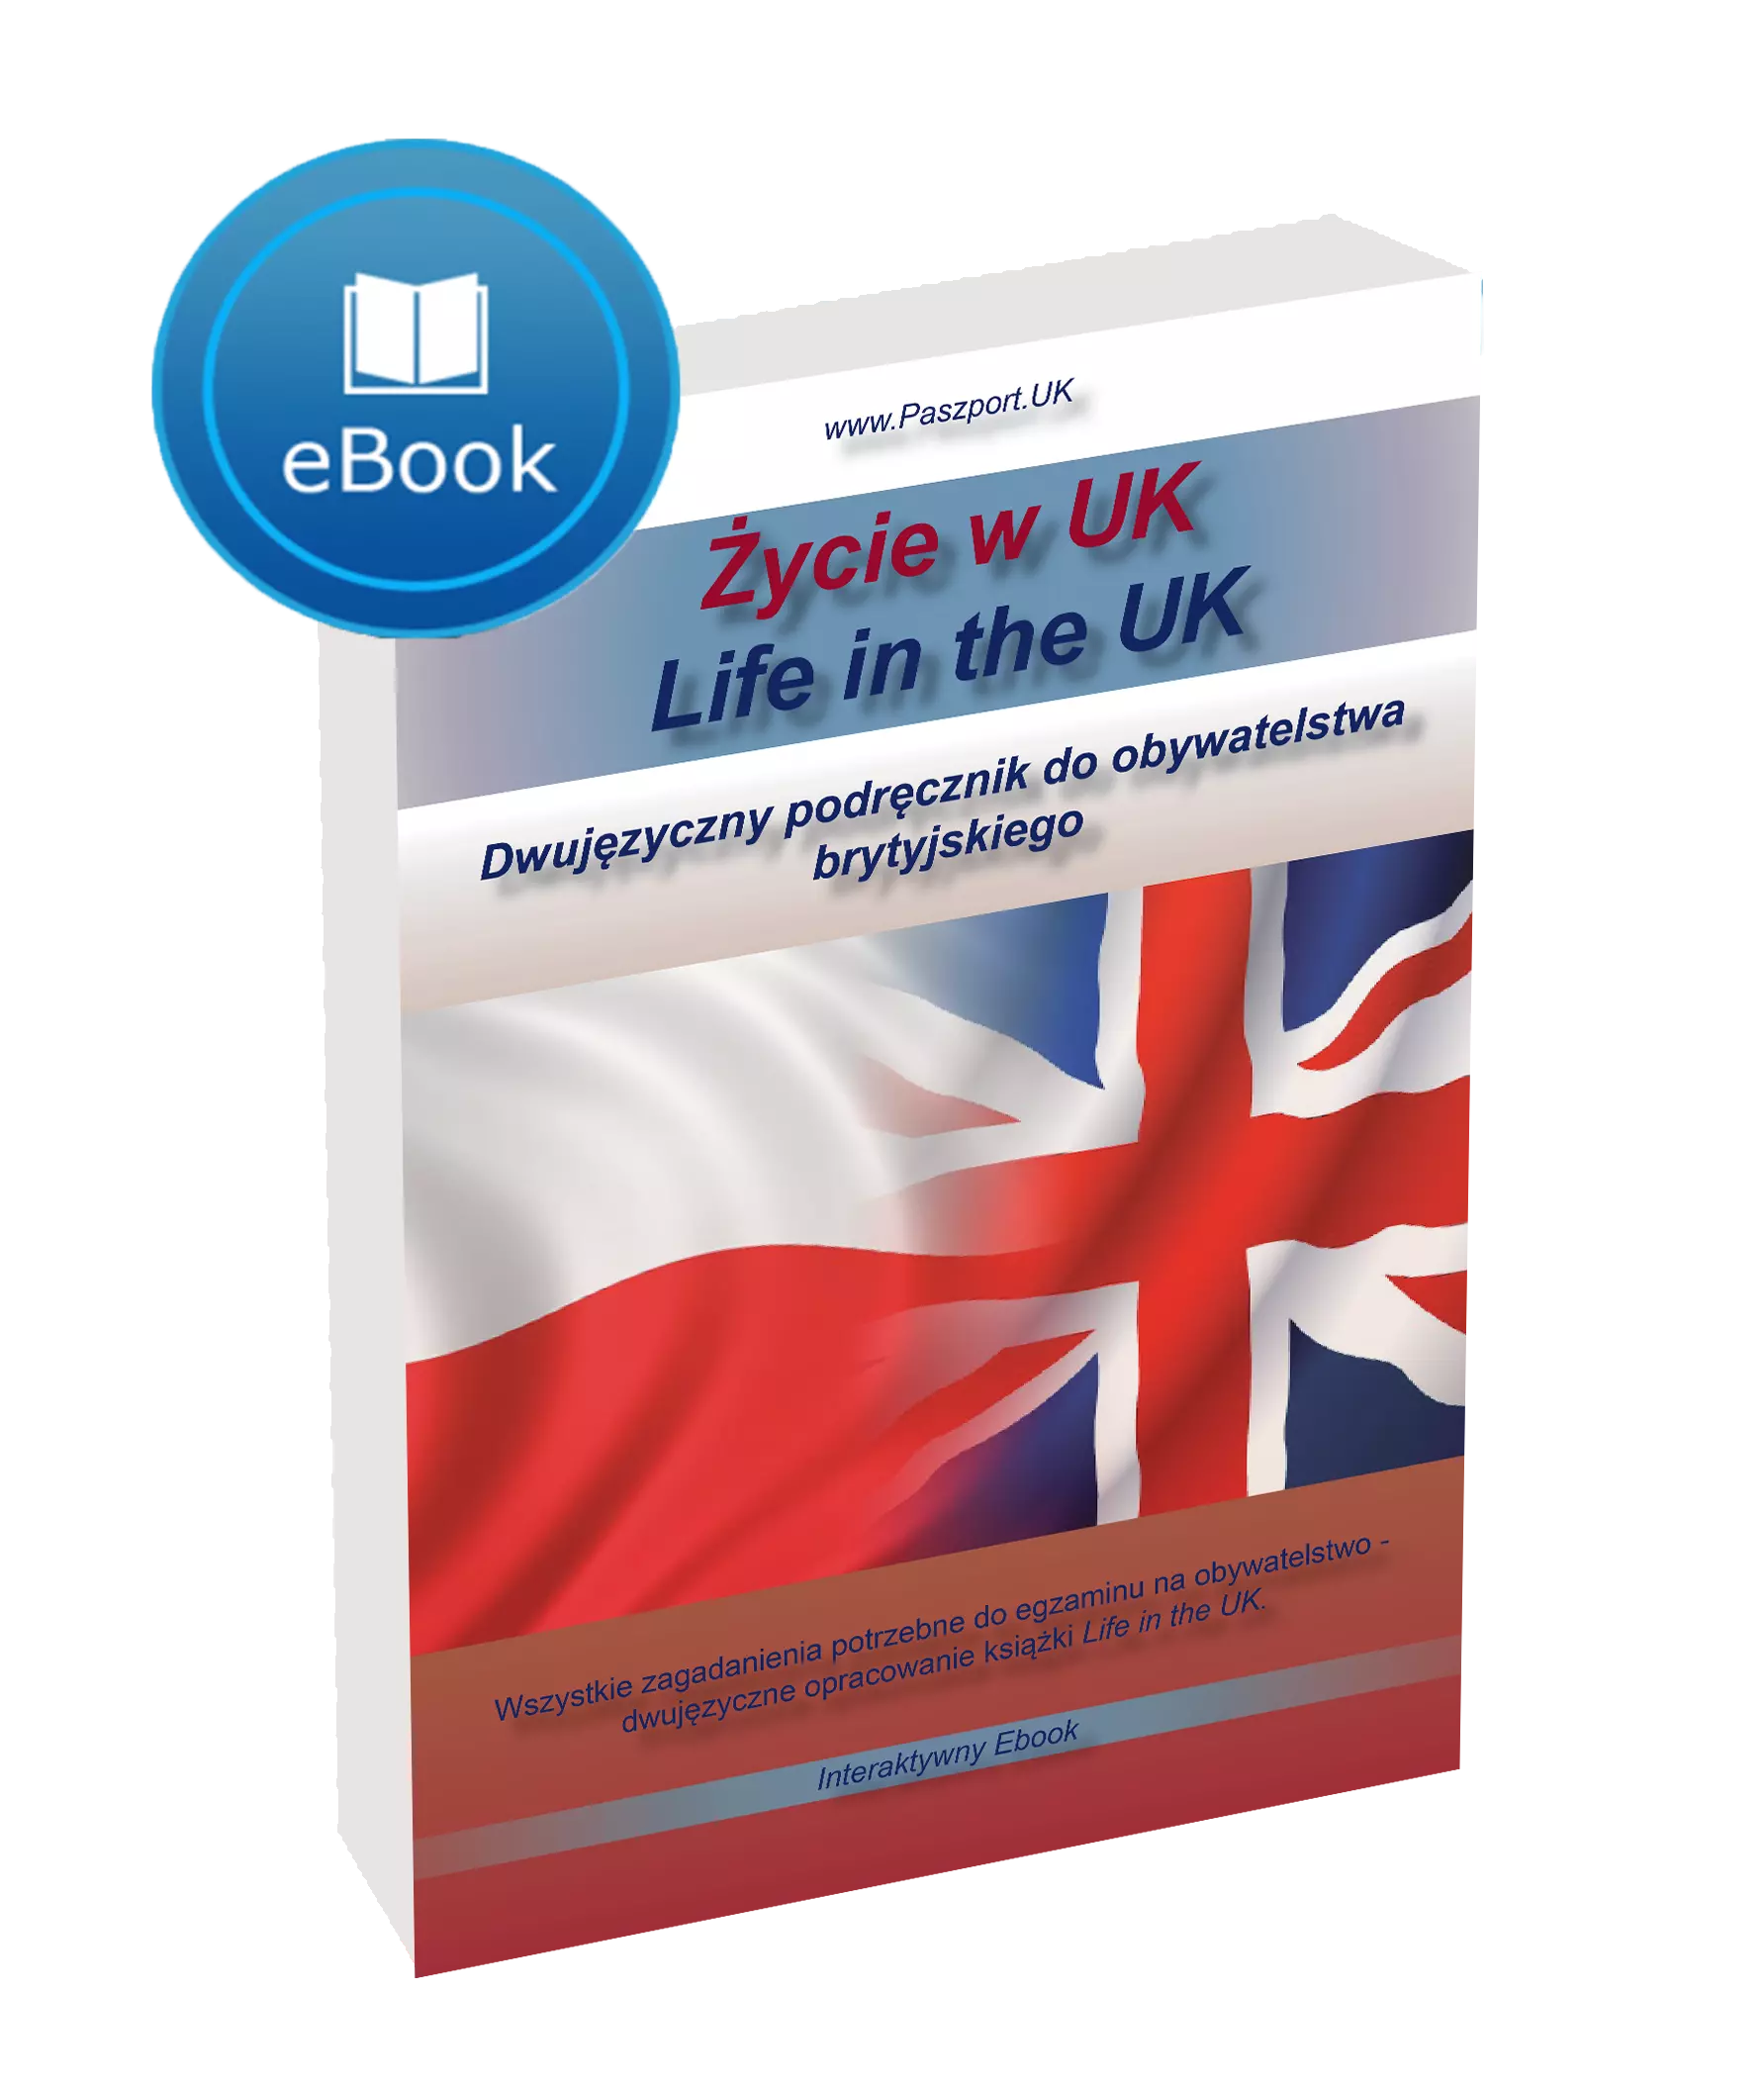 Apka Life in the UK po polsku Zycie w UK